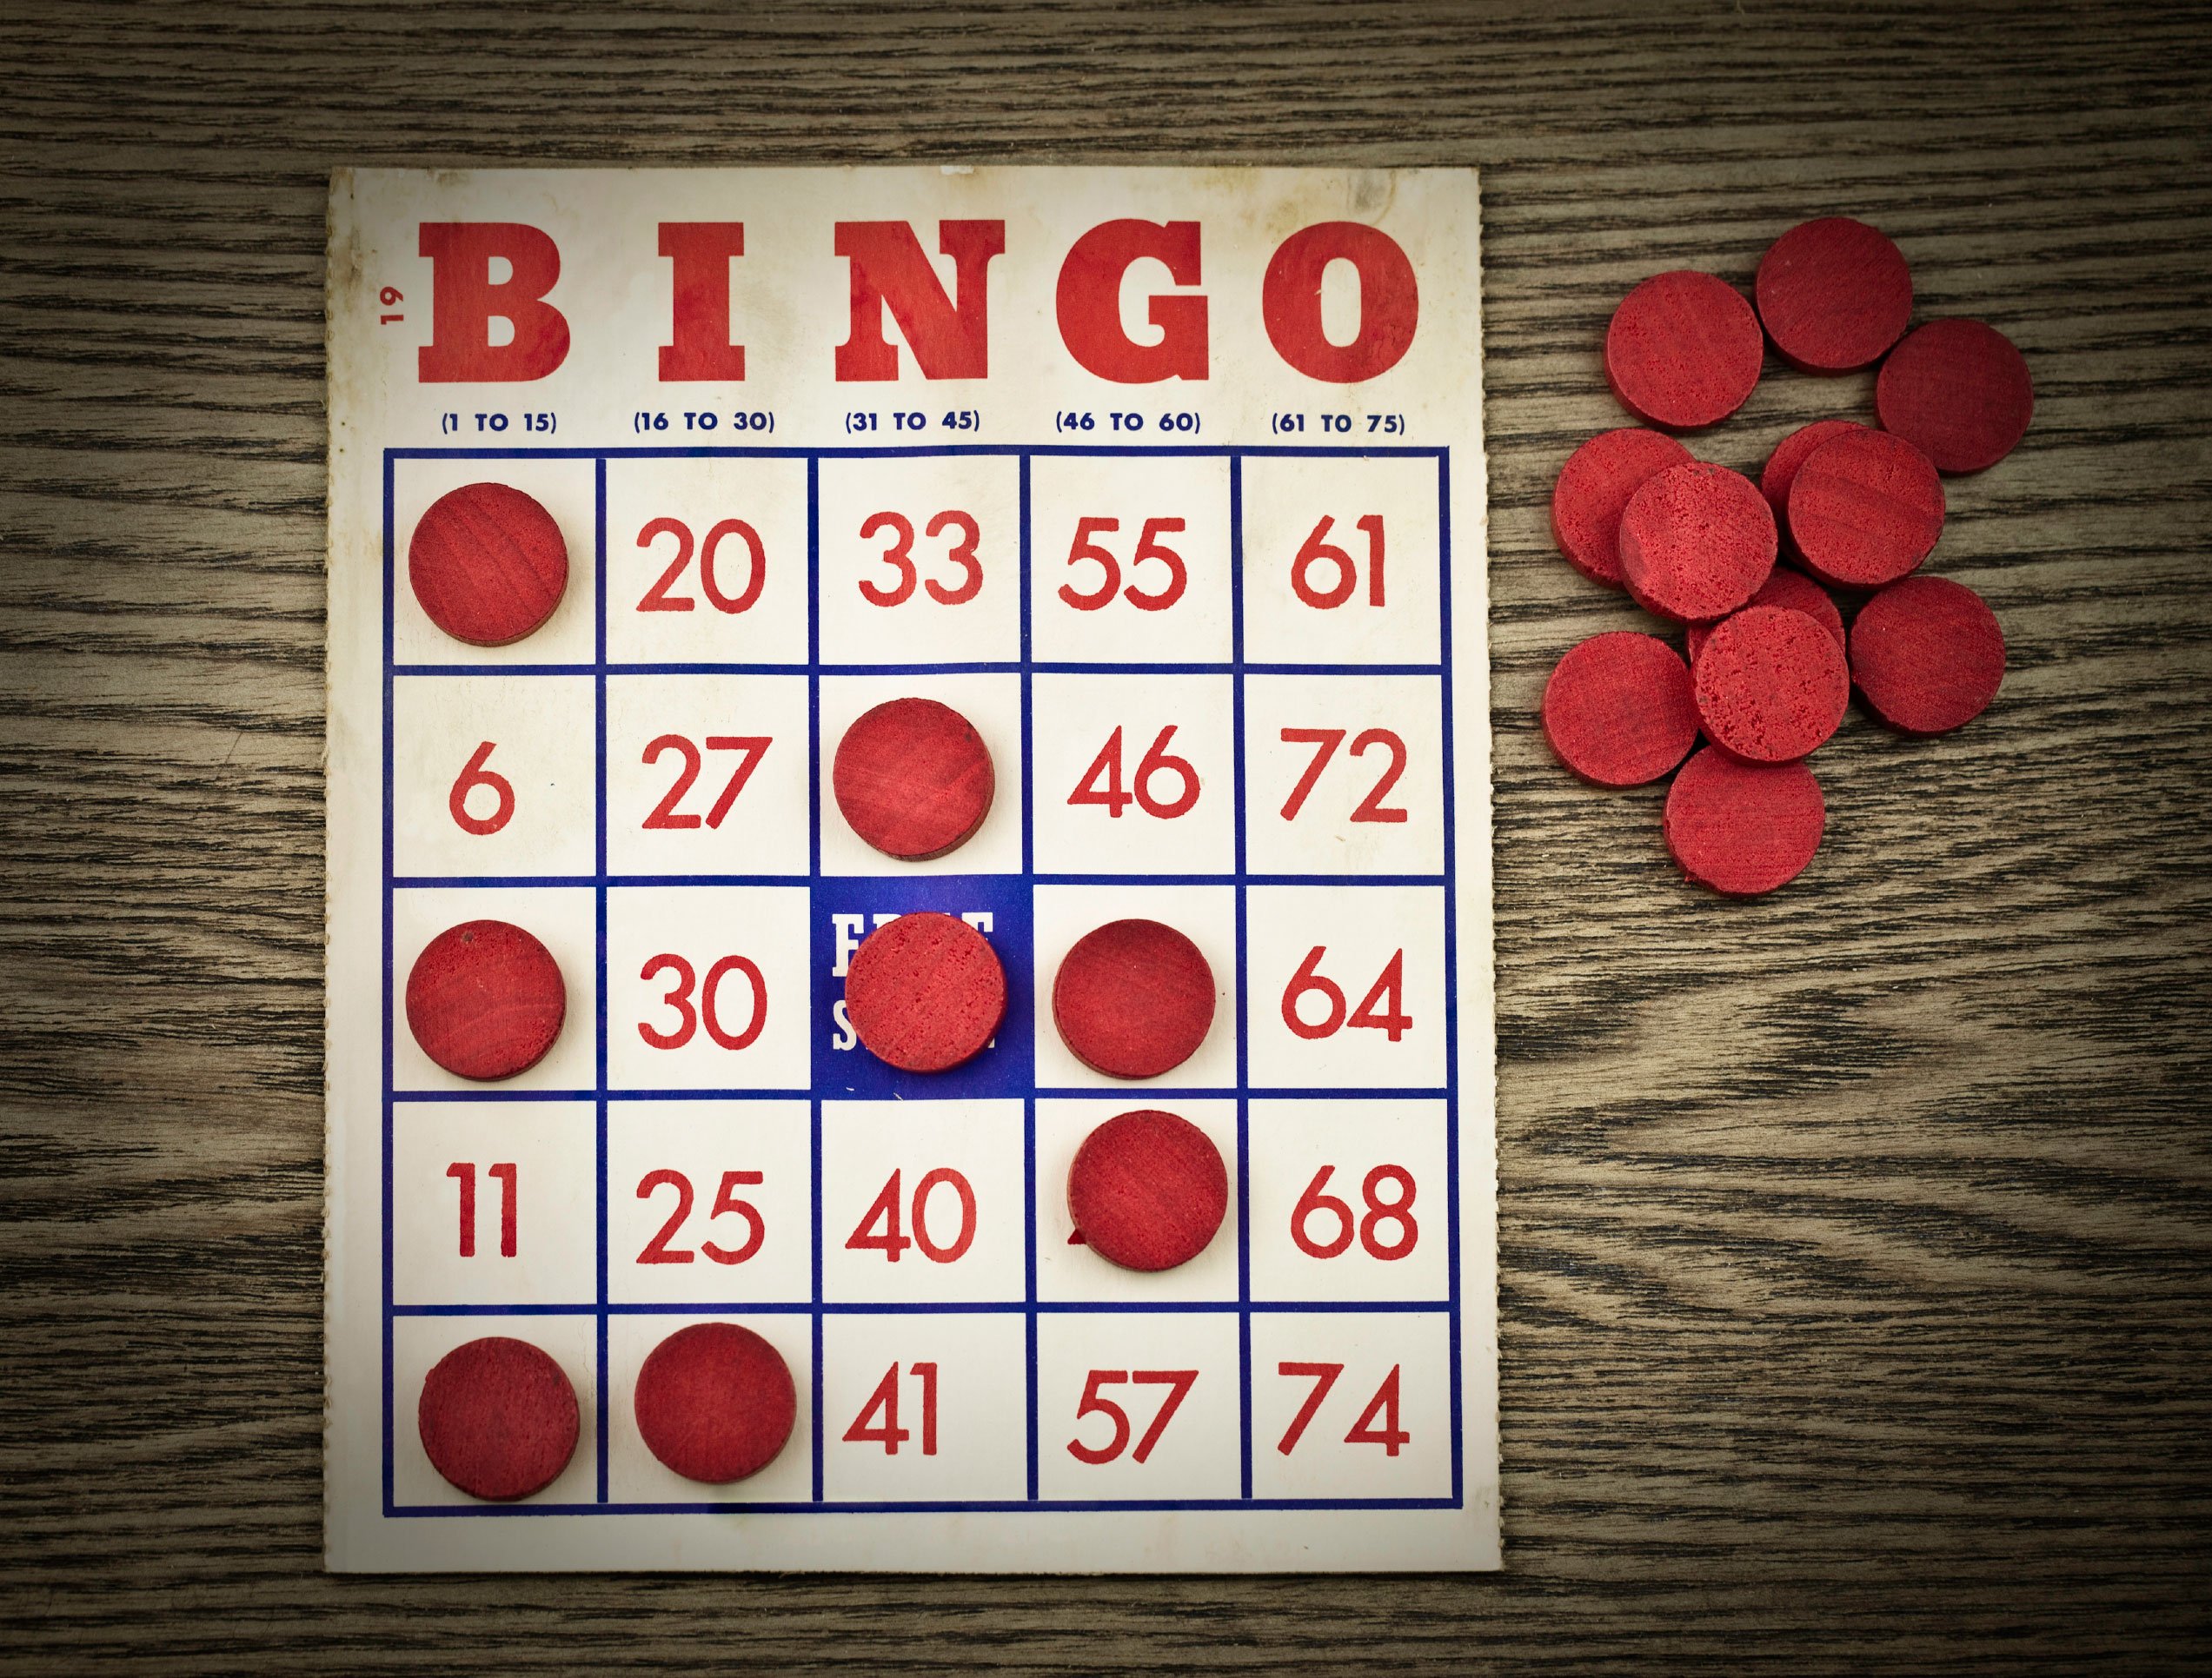 Winning Tips for the Best Online Bingo